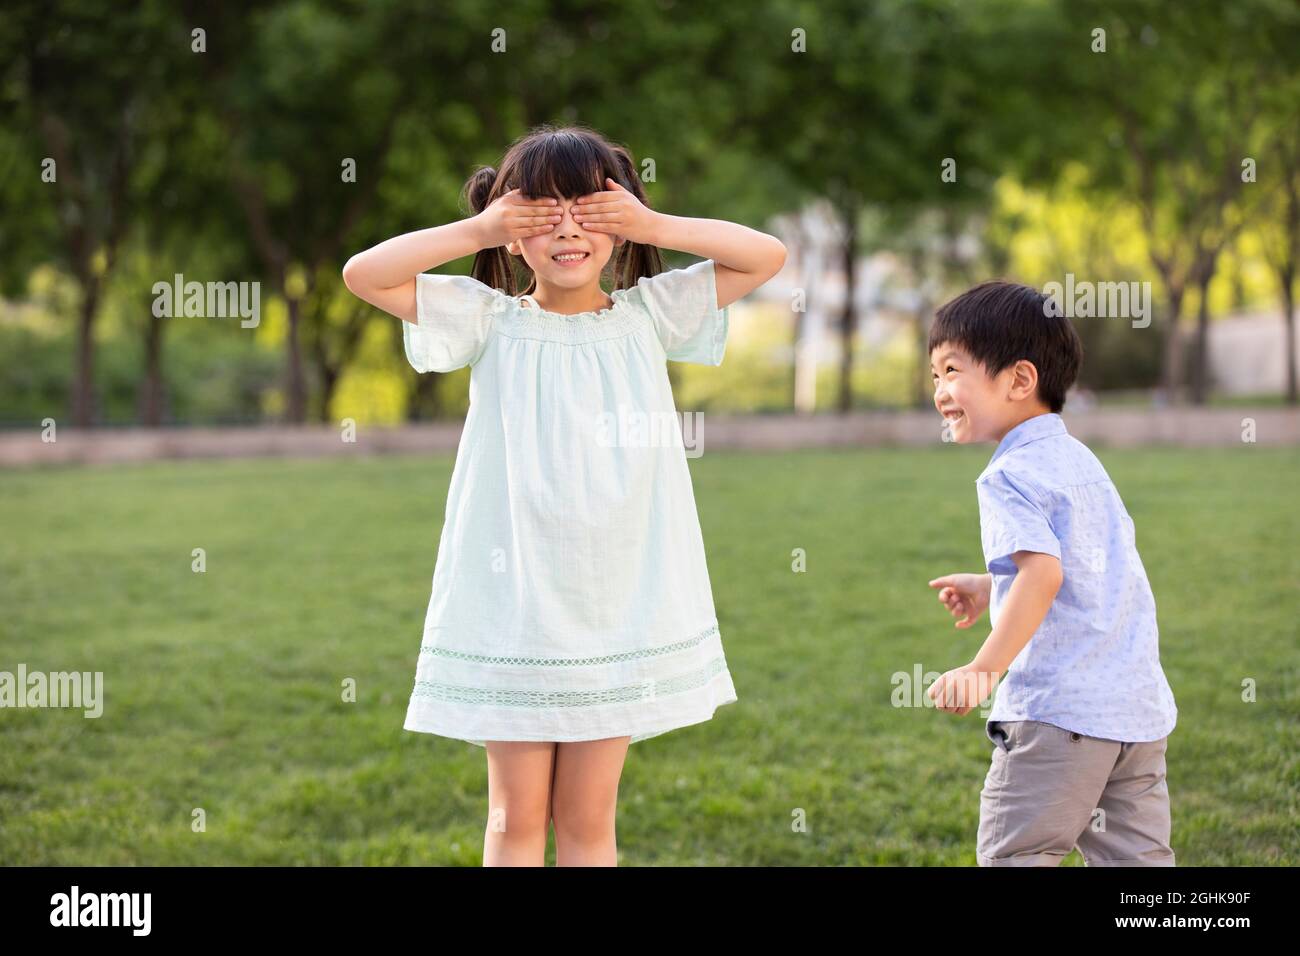 Due bambini che giocano nascondono e cercano nel parco Foto Stock